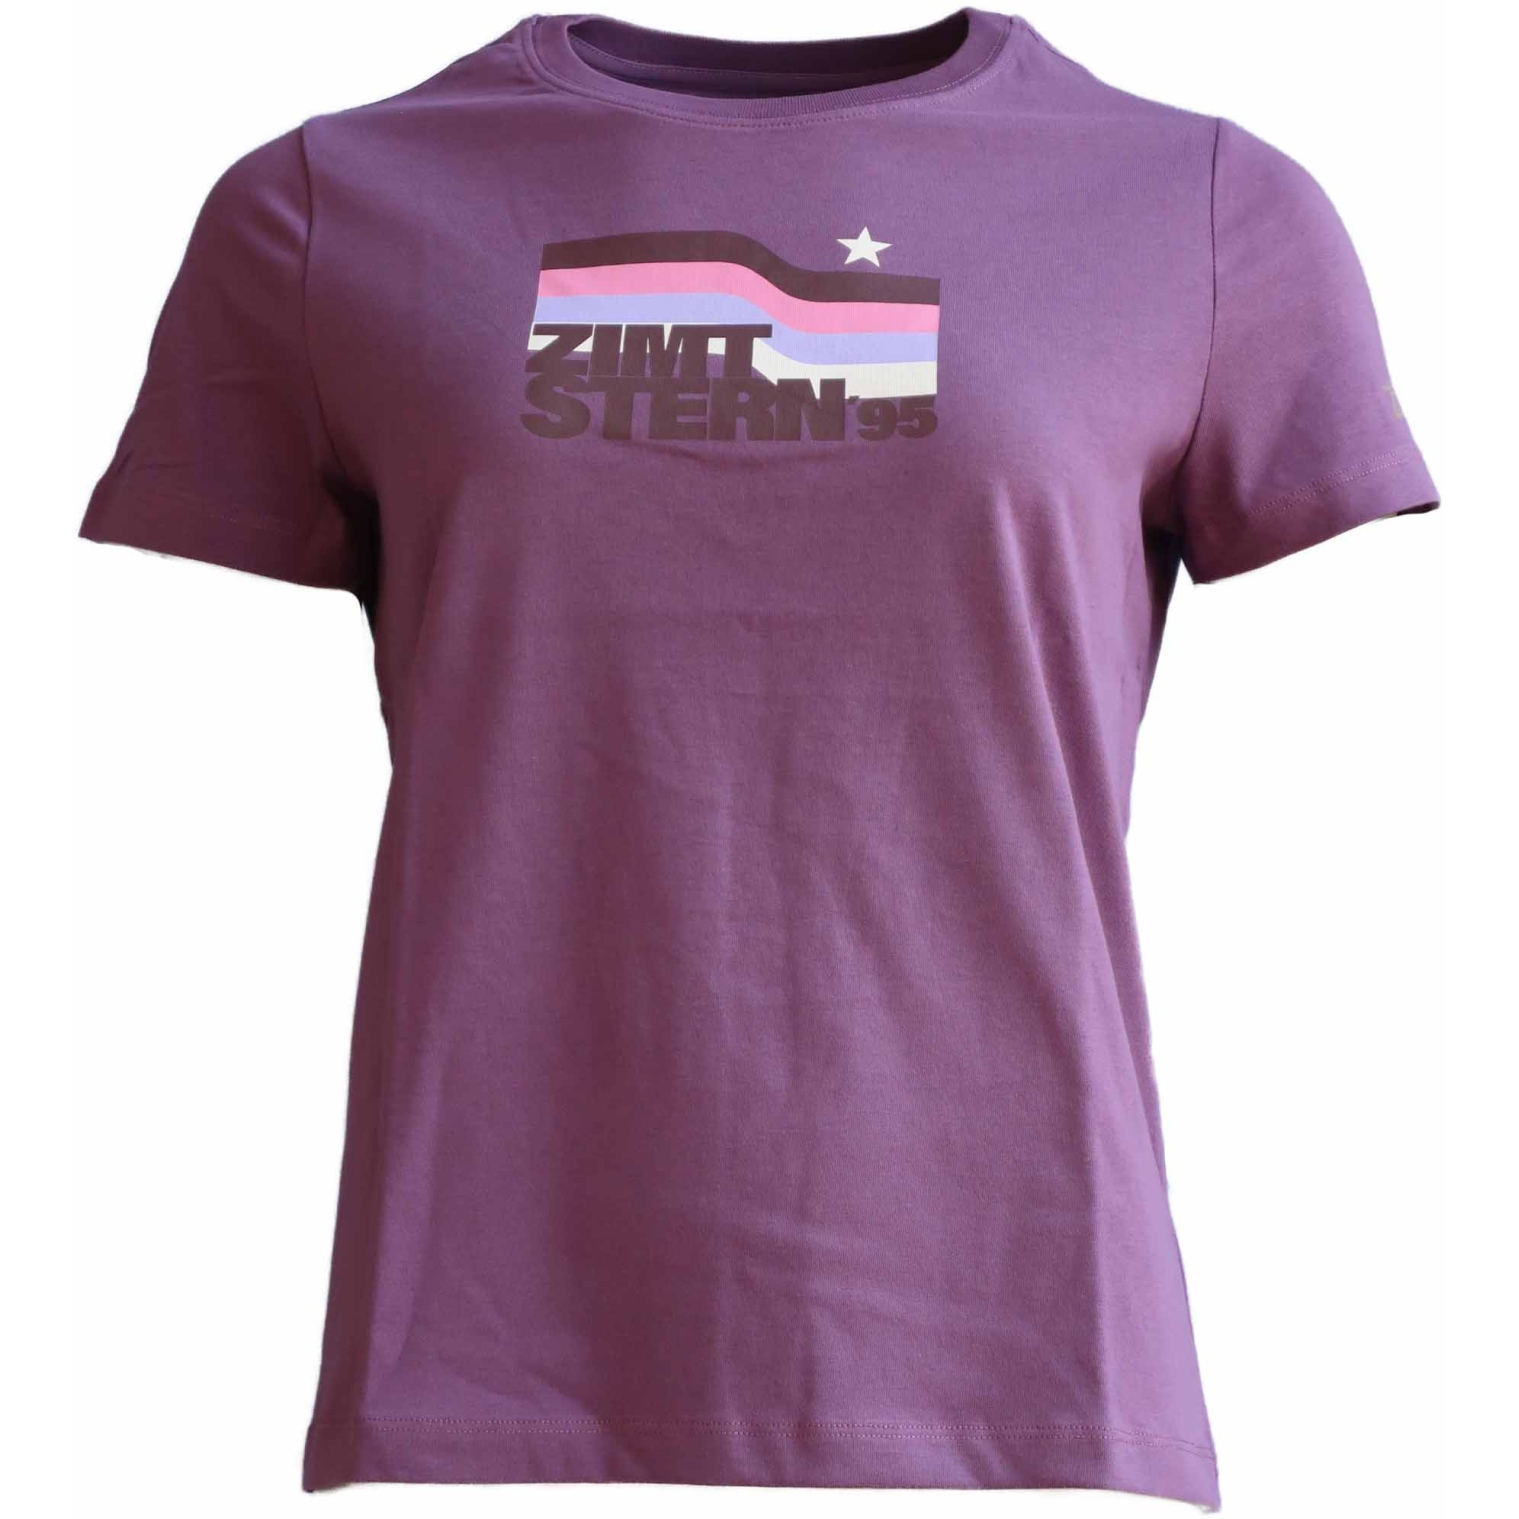 Produktbild von Zimtstern Northz T-Shirt Damen - Berry